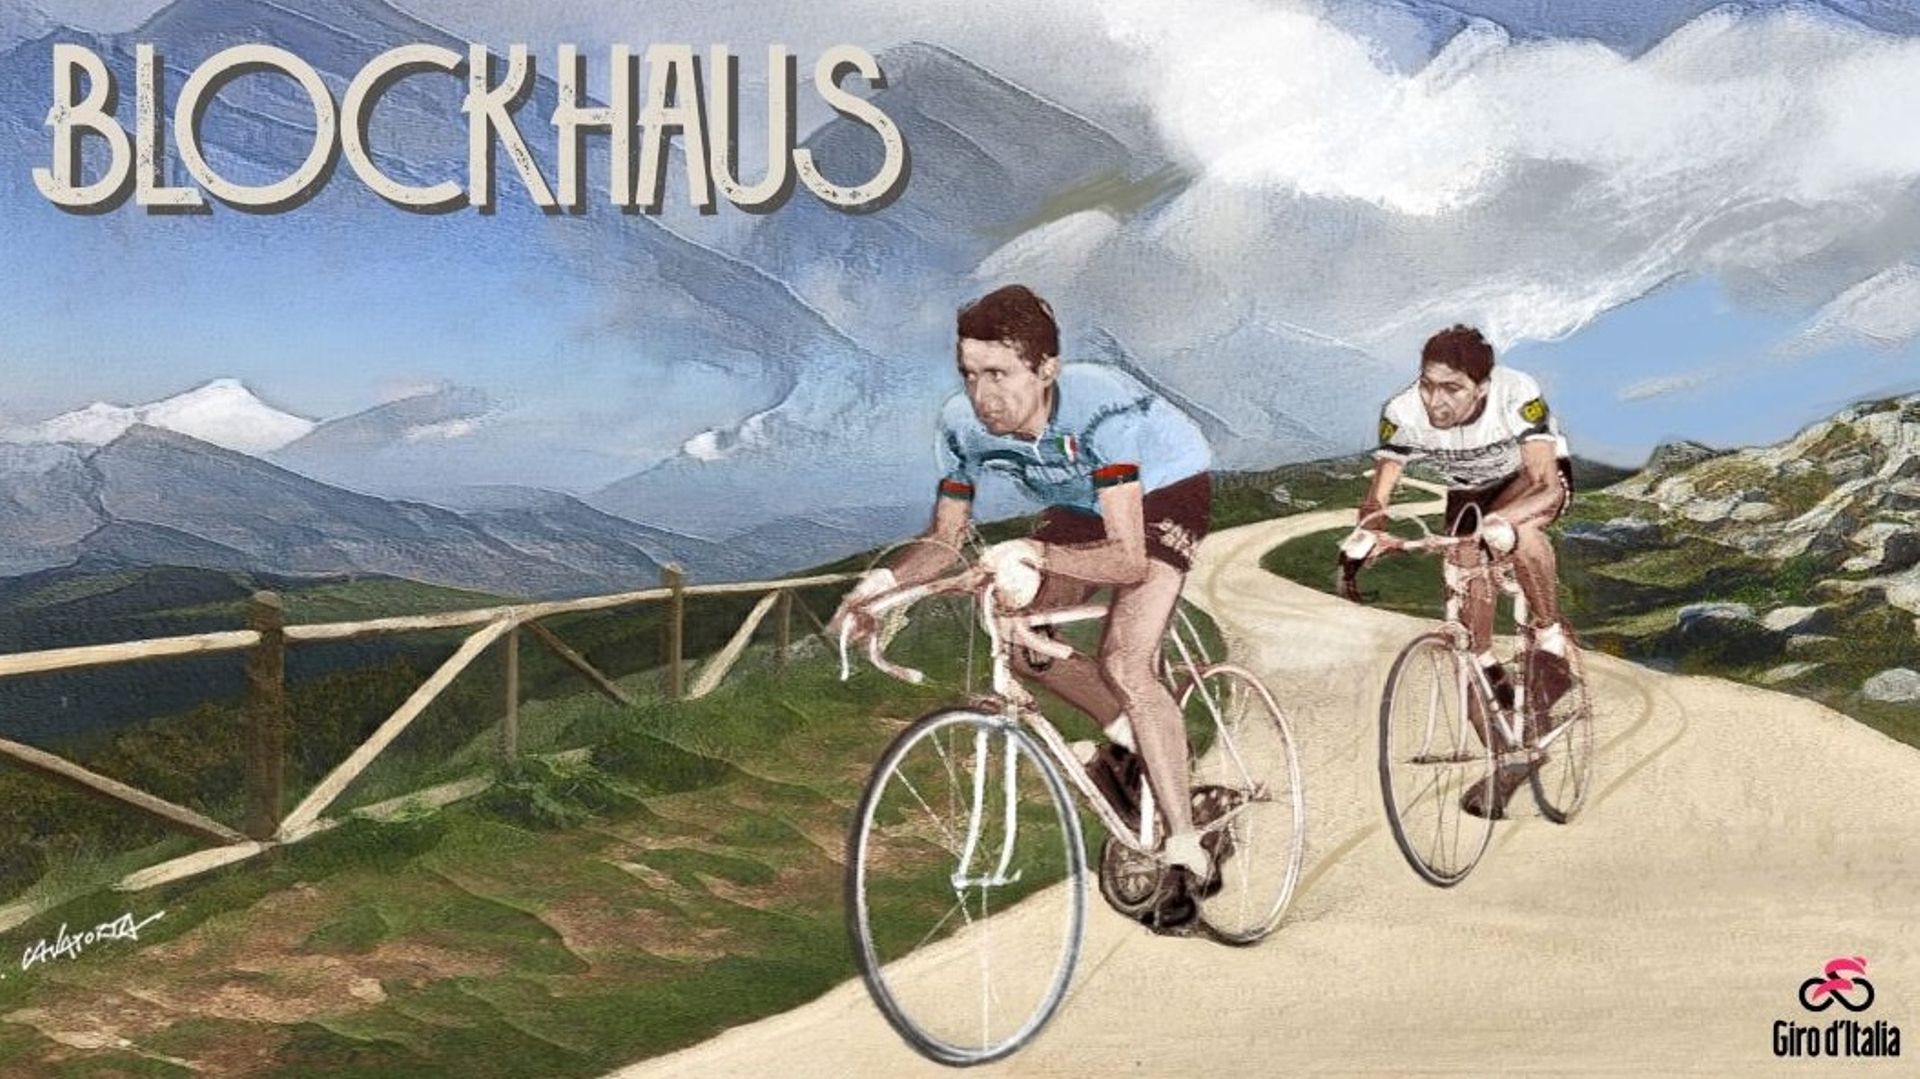 Cyclisme : Une reproduction de l’arrivée de la 12ème étape du Giro 1967 au sommet du Blockhaus. Duel entre Italo Zilioli et Eddy Merckx. Le Cannibale l’emportera.
